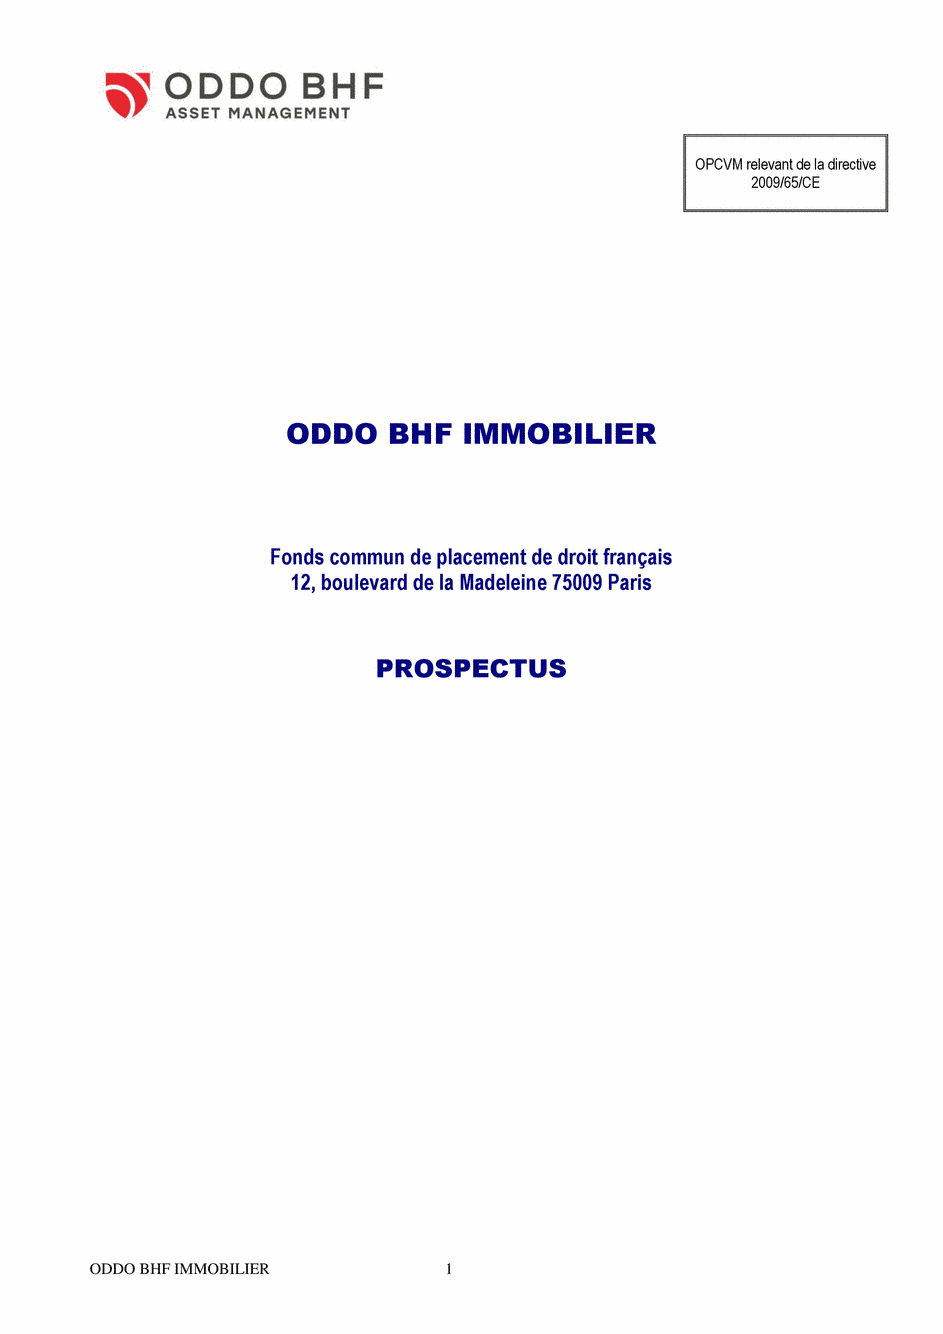 Prospectus ODDO BHF IMMOBILIER CR-EUR - 12/11/2019 - Français